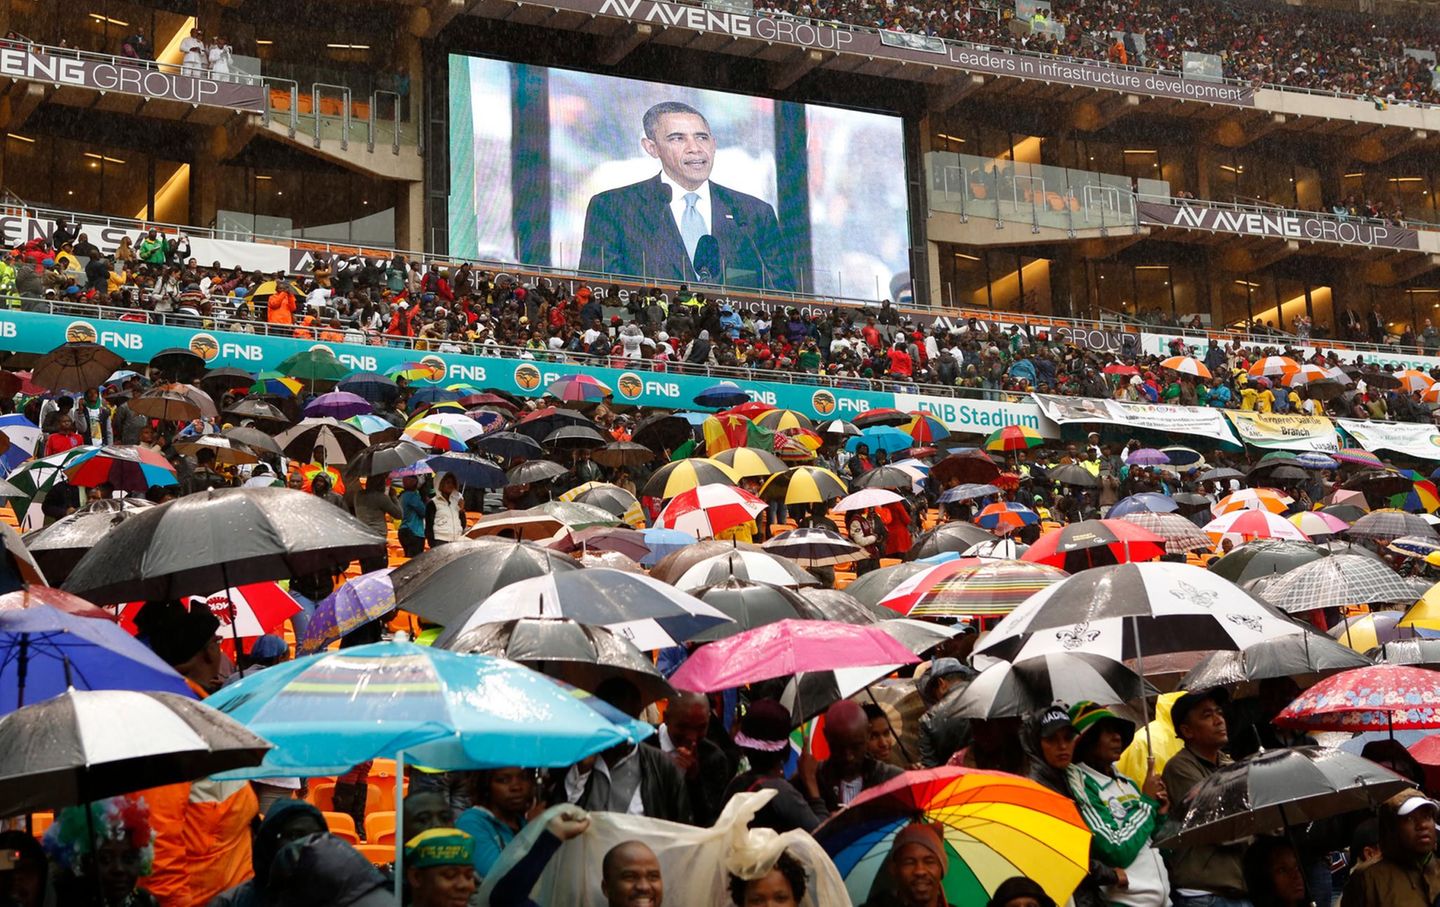 Bei Regenwetter kommen tausende Trauernde zum Stadion nach Johannesburg um an den Feierlichkeiten teilzunehmen.